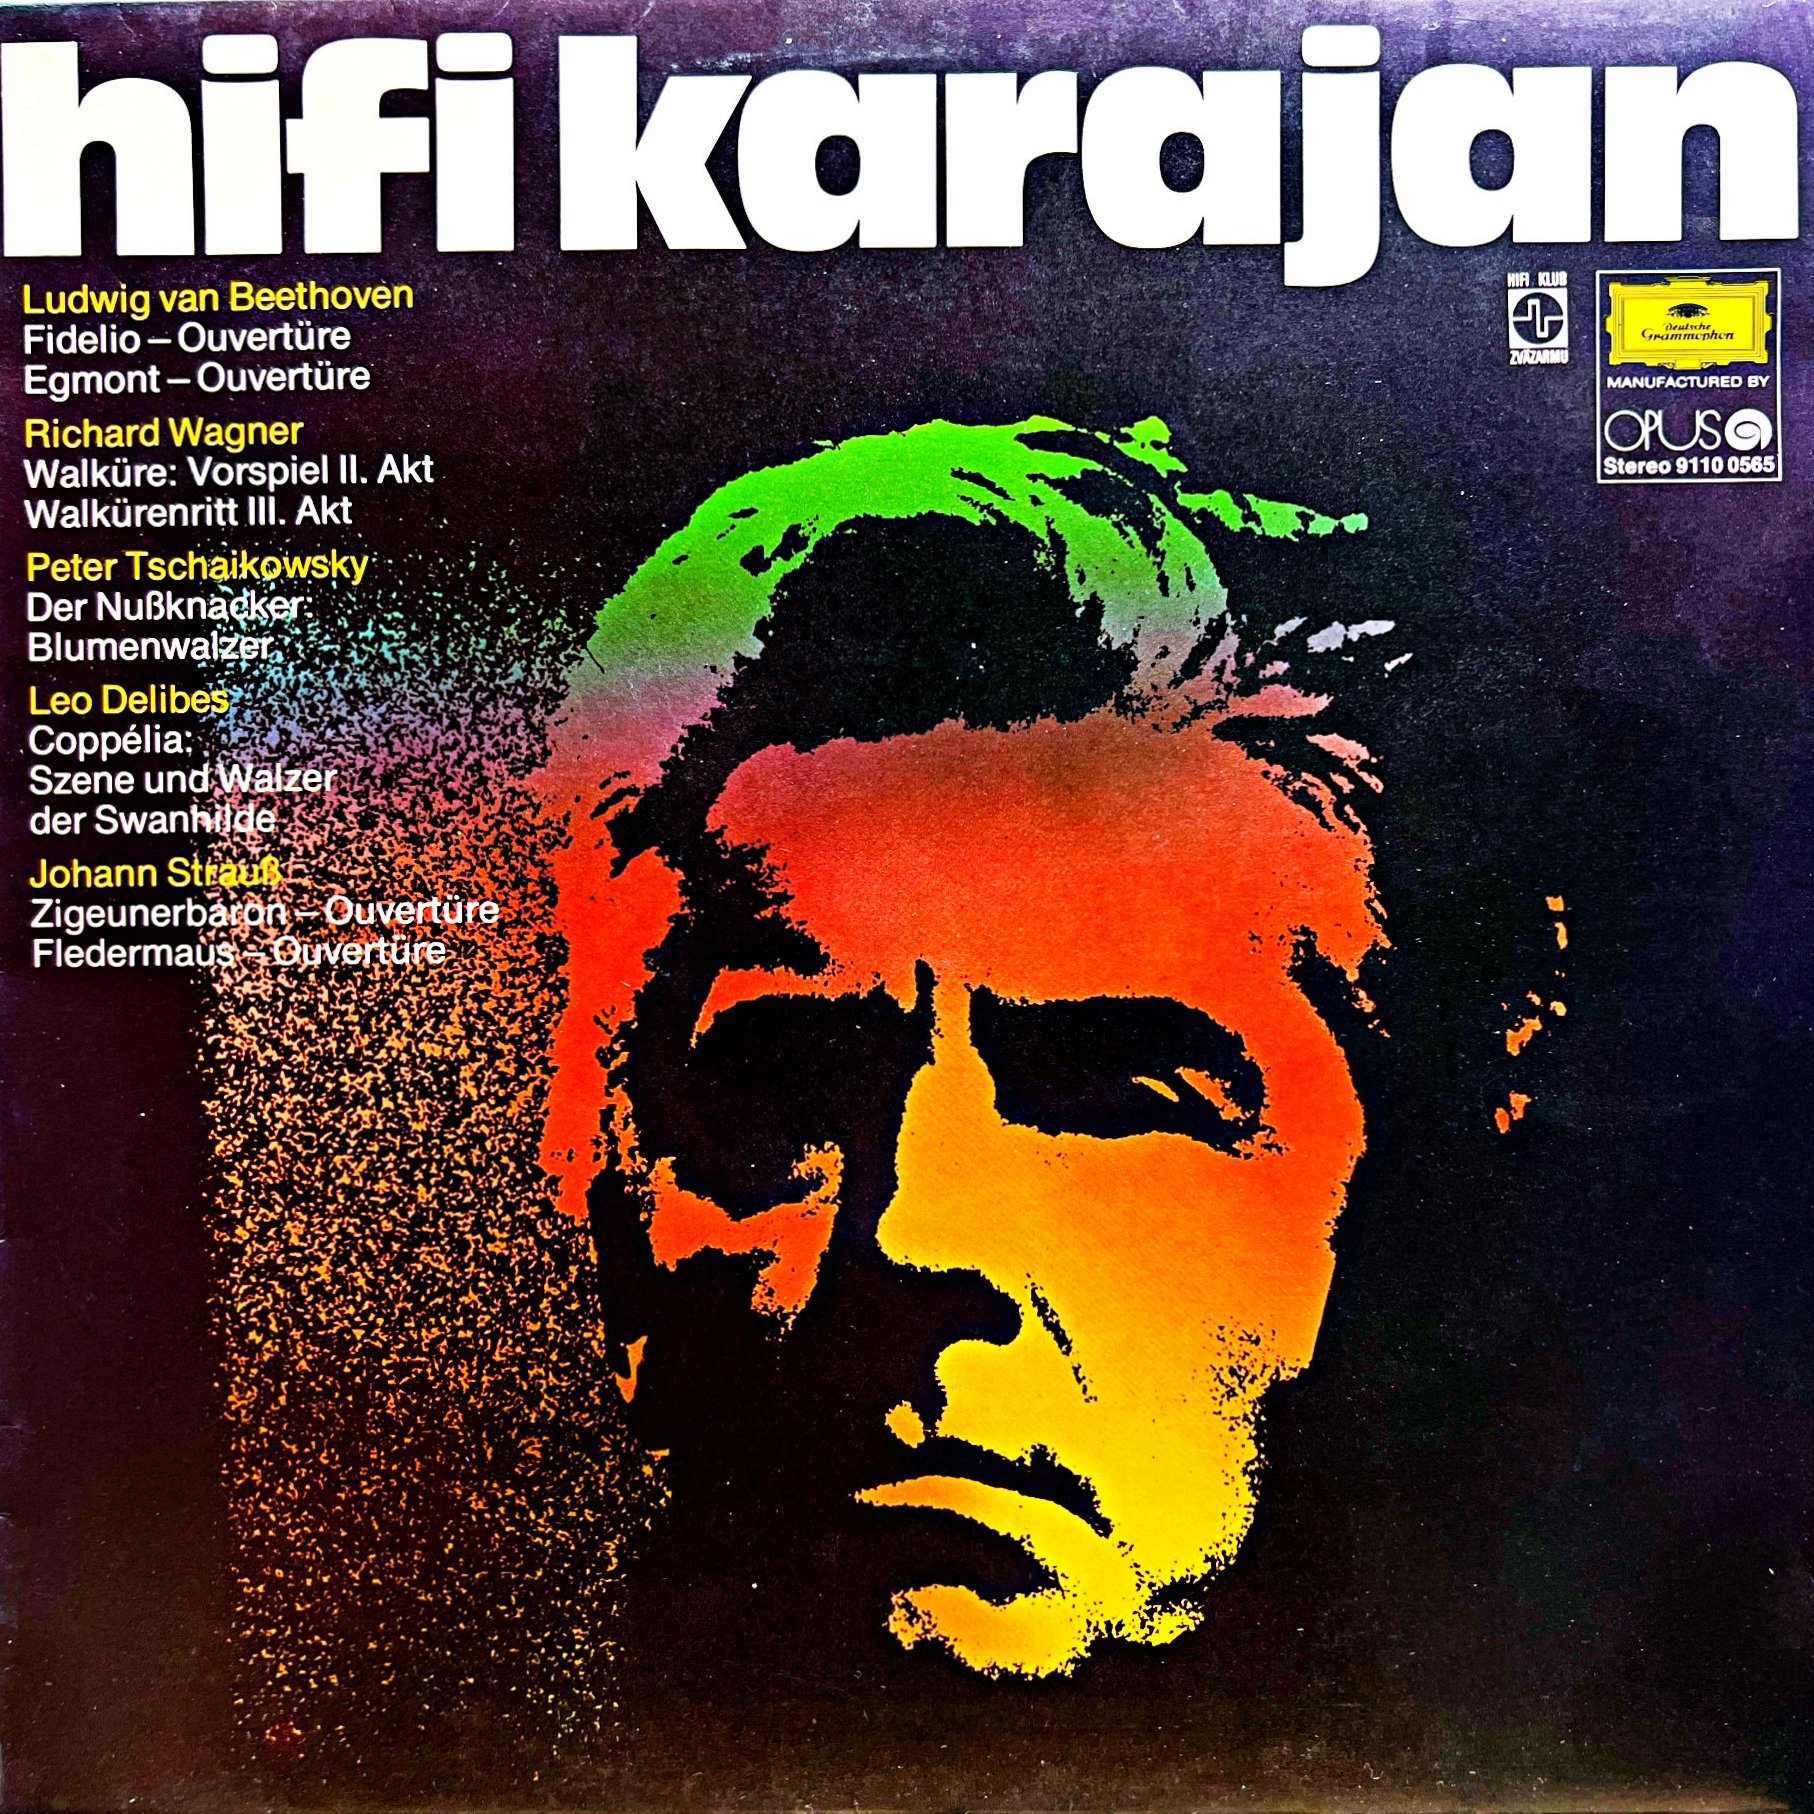 LP Karajan, Berliner Philharmoniker – Hifi Karajan